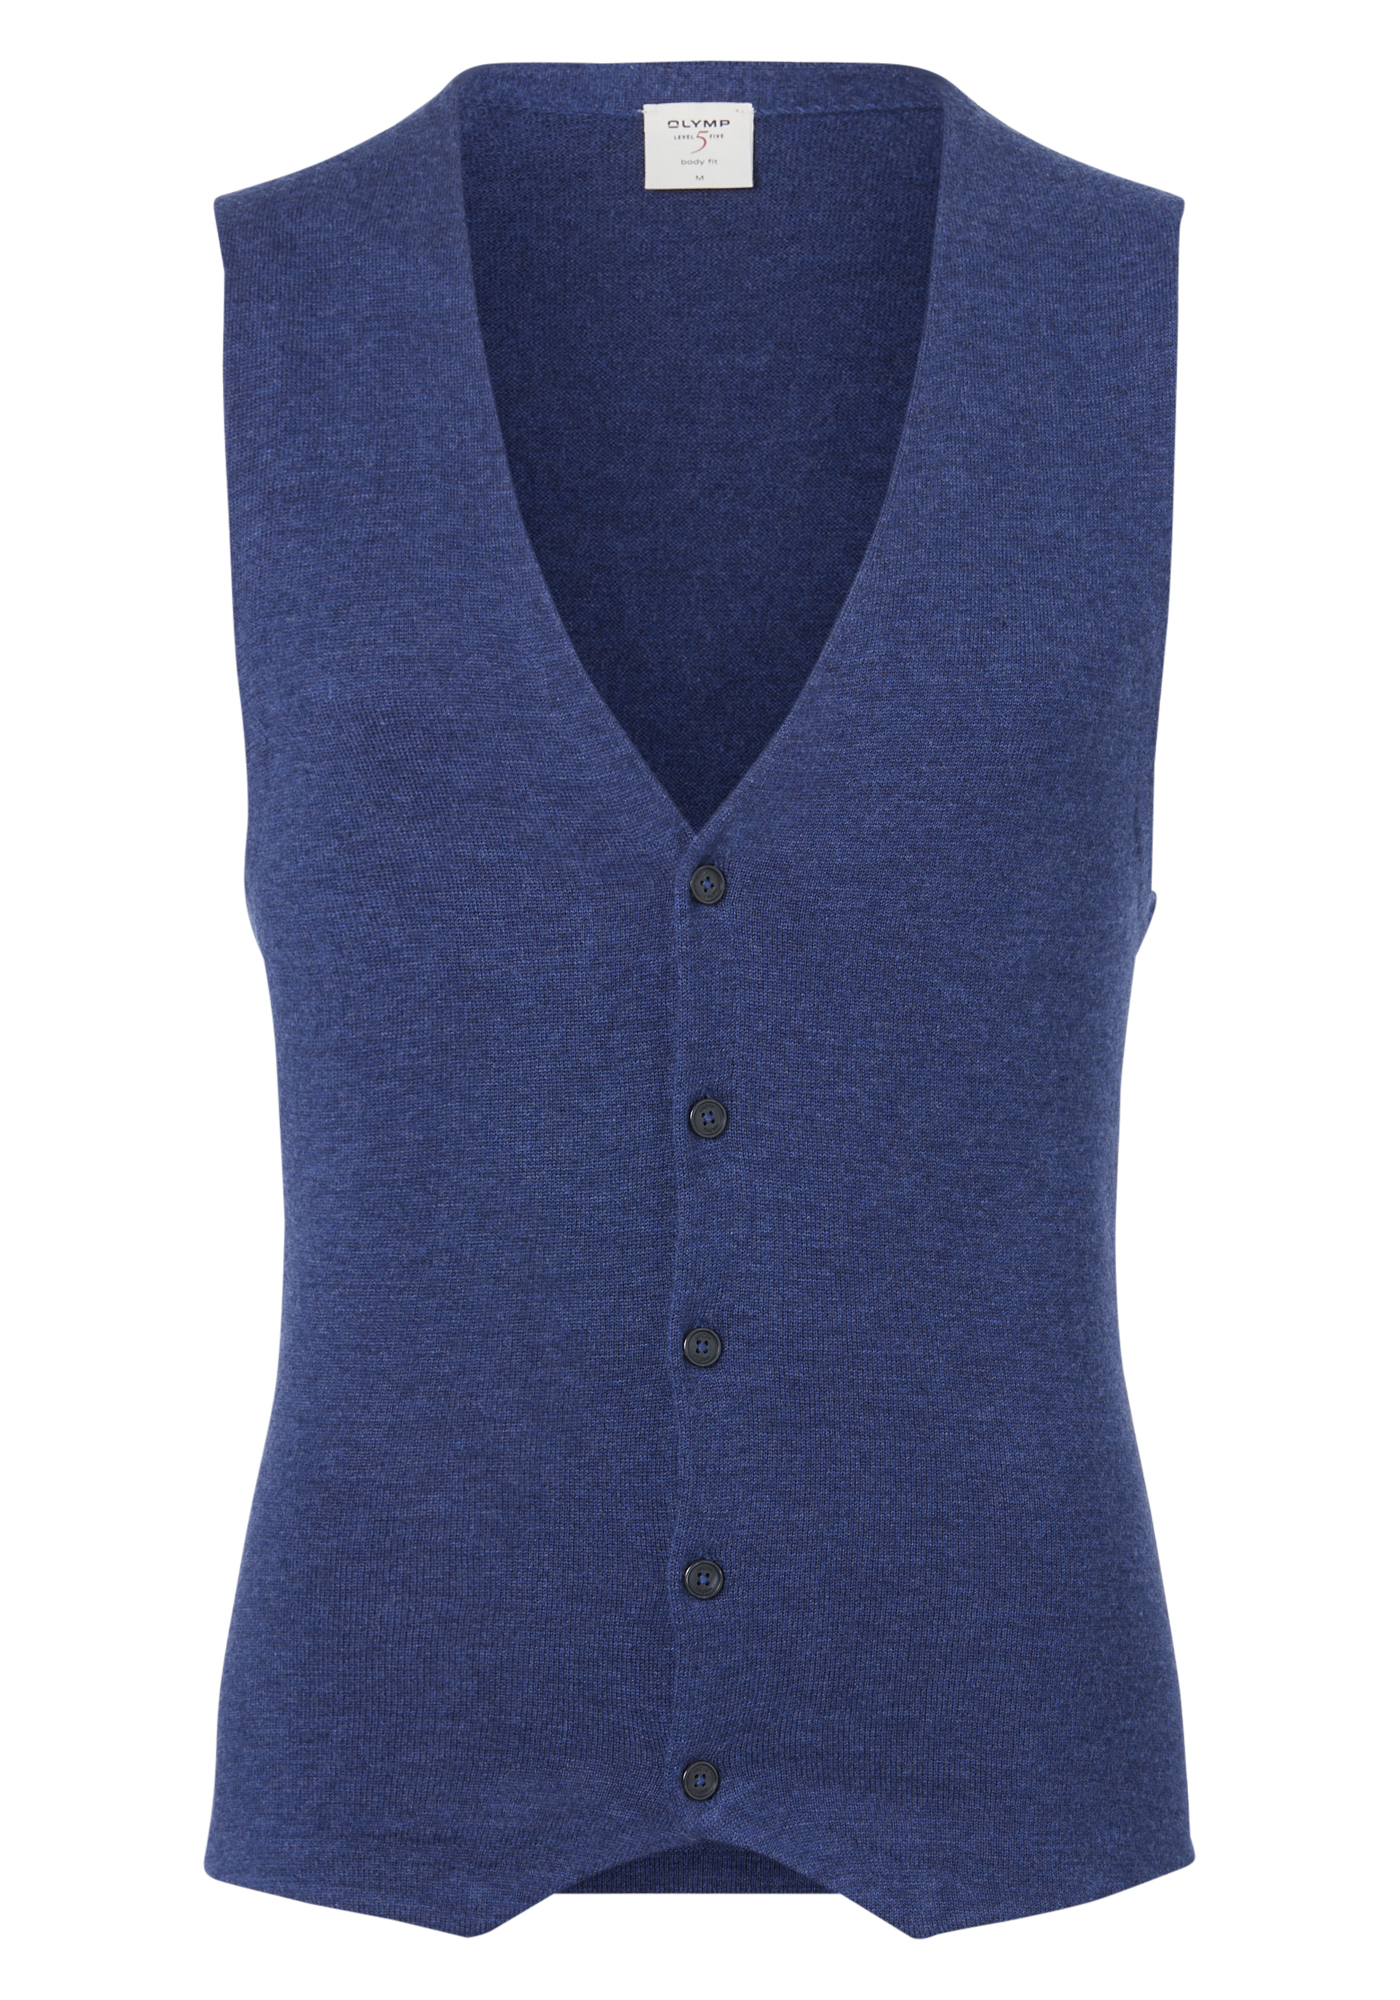 controleren berekenen Opknappen OLYMP Level 5 body fit gilet, wol met zijde, jeans blauw mouwloos vest -  Zomer SALE tot 50% korting